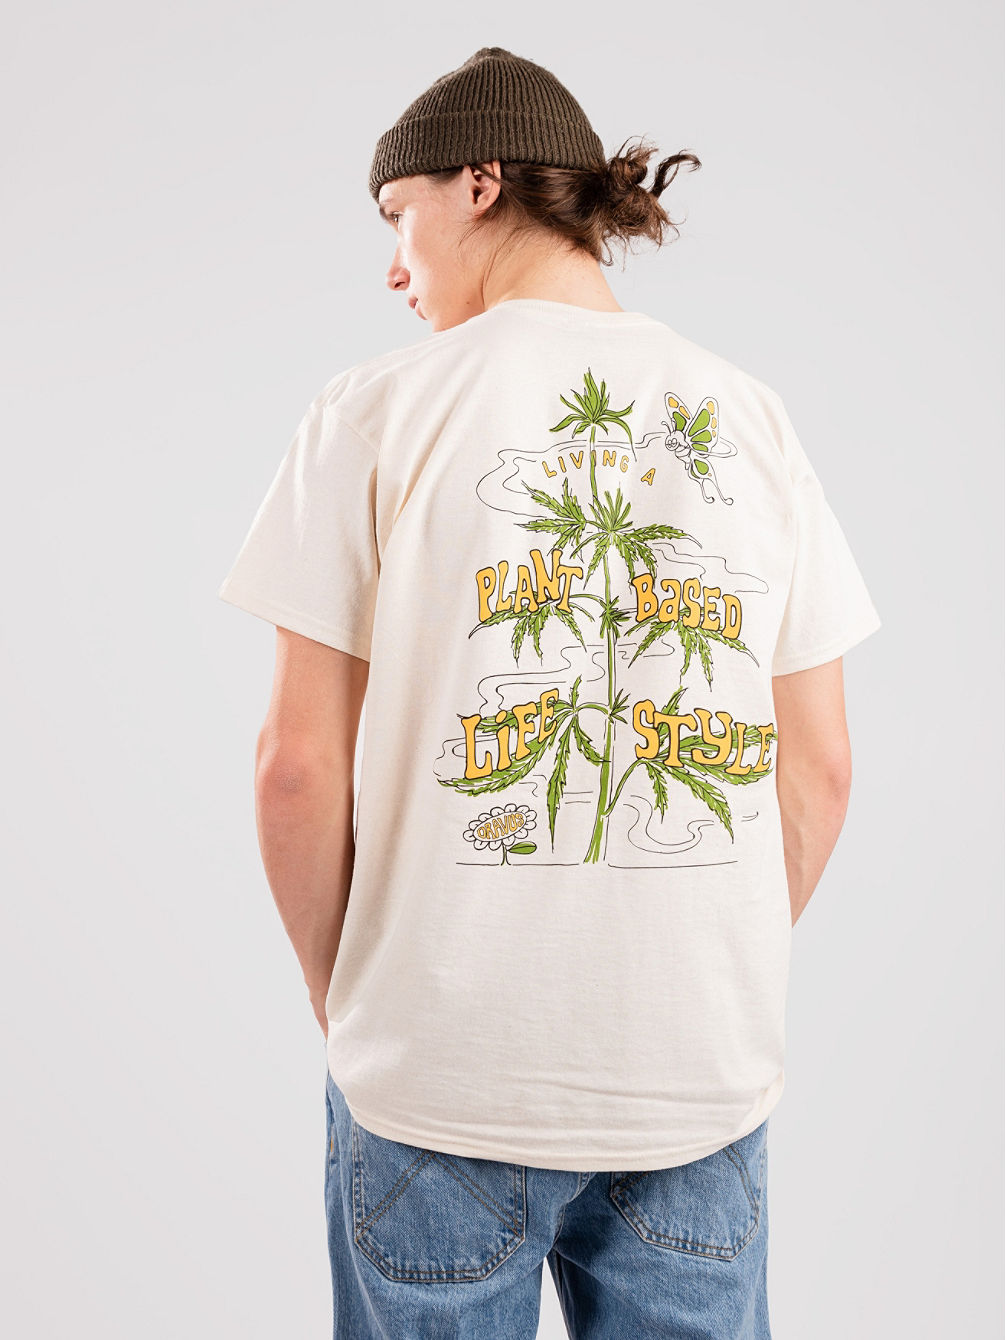 Plantbased Lifestyle Camiseta